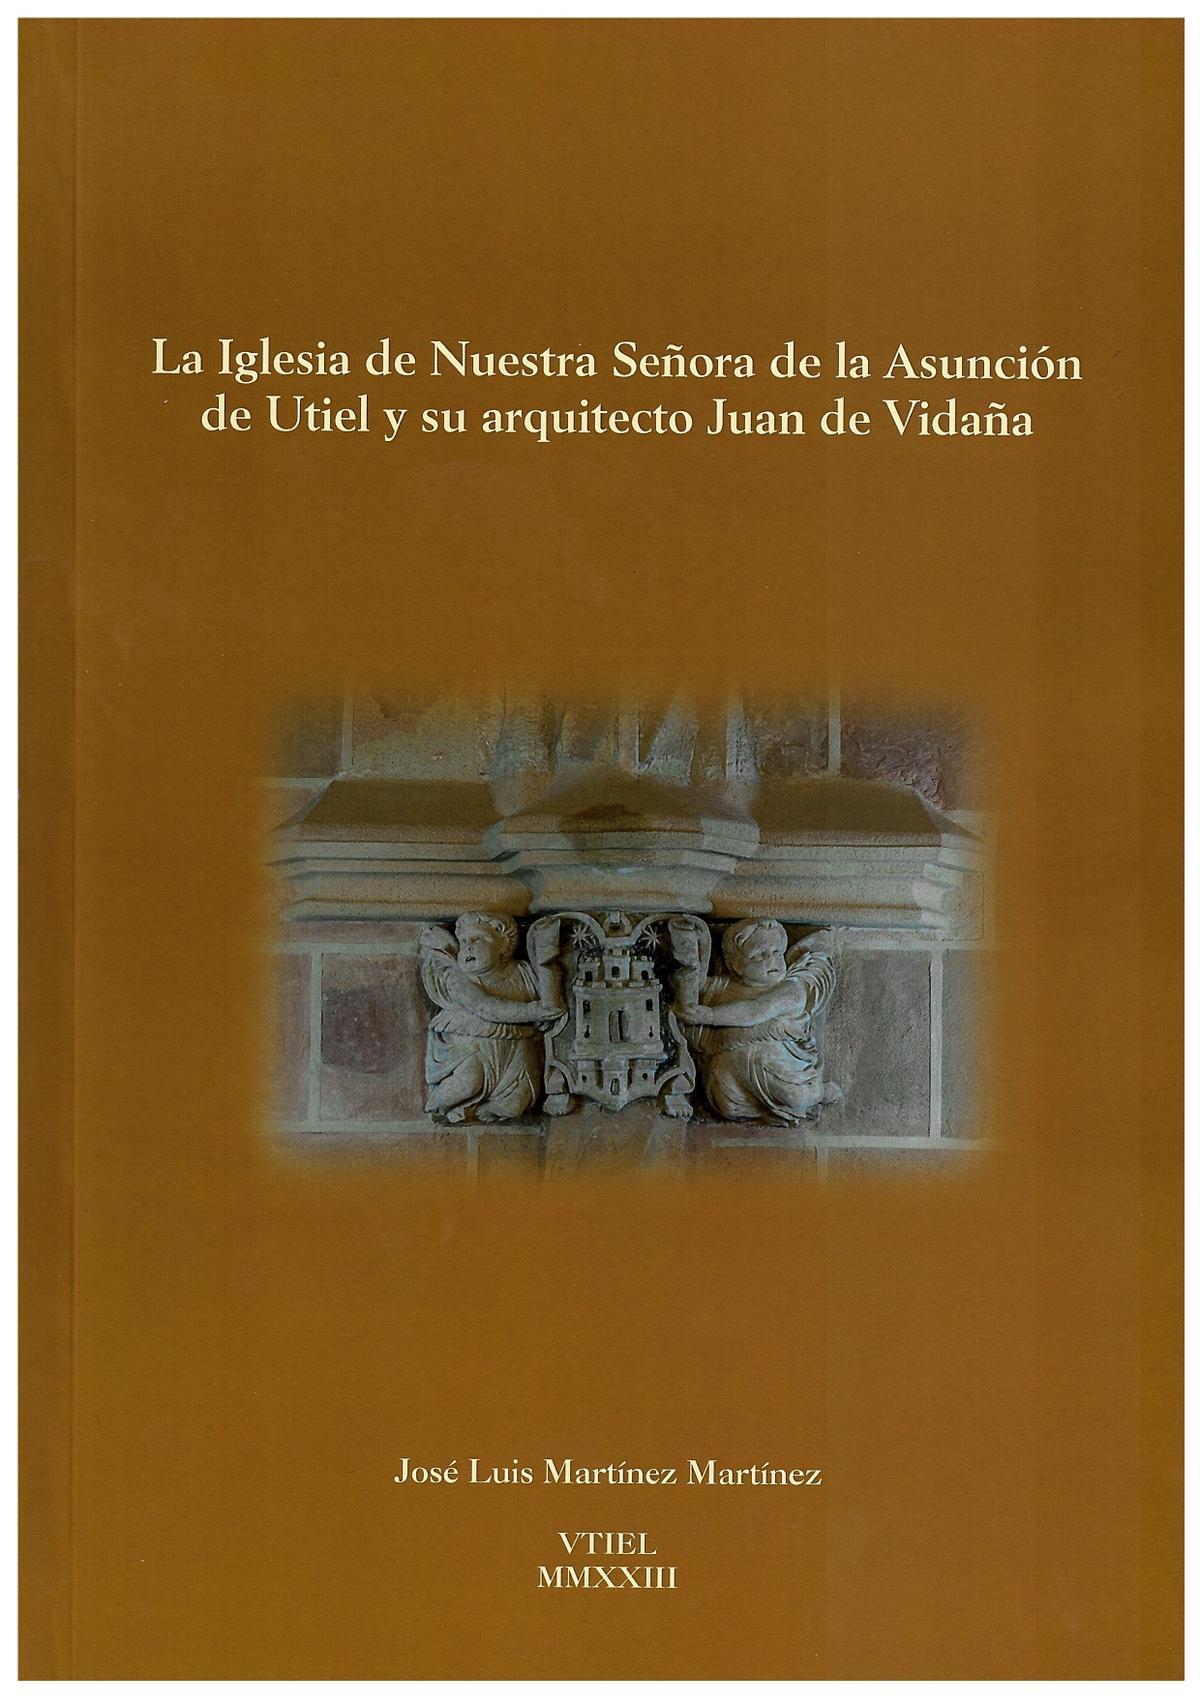 Portada del libro 'La Iglesia de Nuestra Señora de la Asunción de Utiel y su arquitecto Juan de Vidaña'